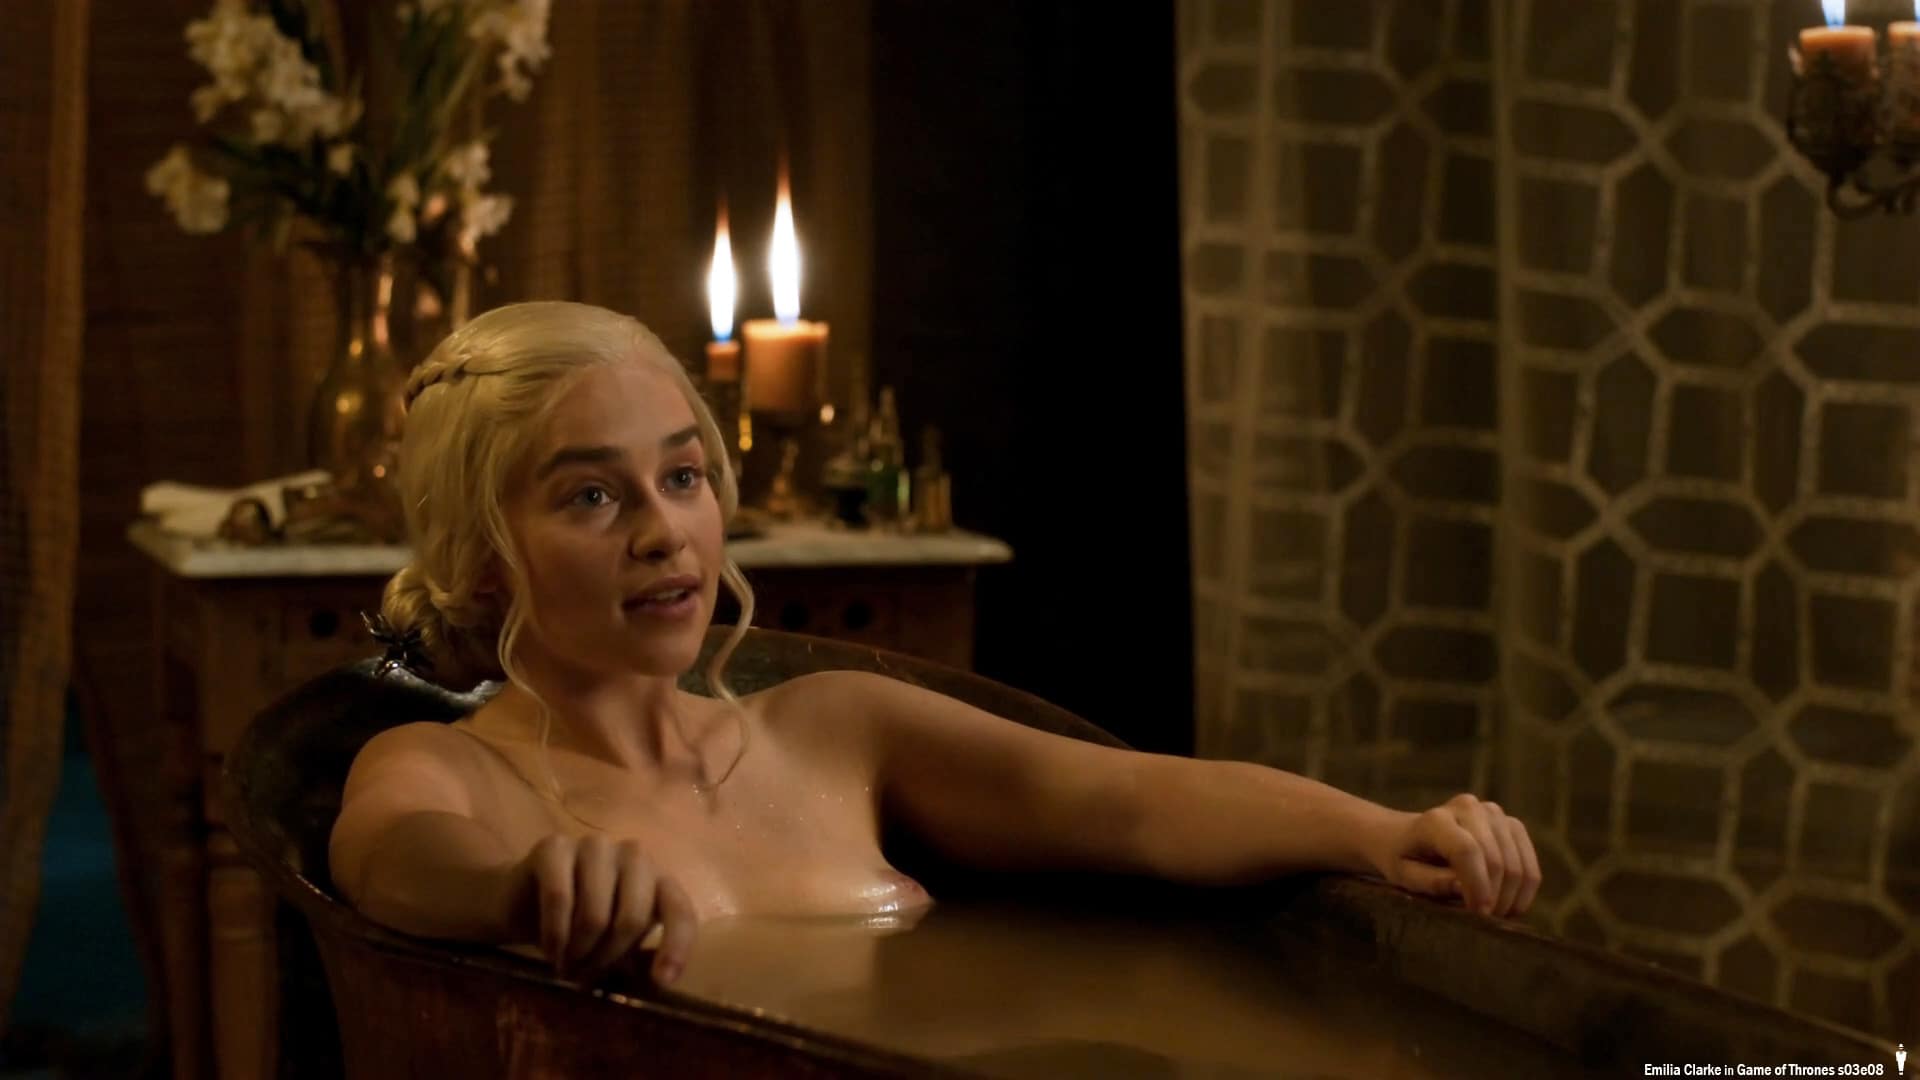 Emilia Clarke Nude (Daenerys Targaryen) - Season 3.